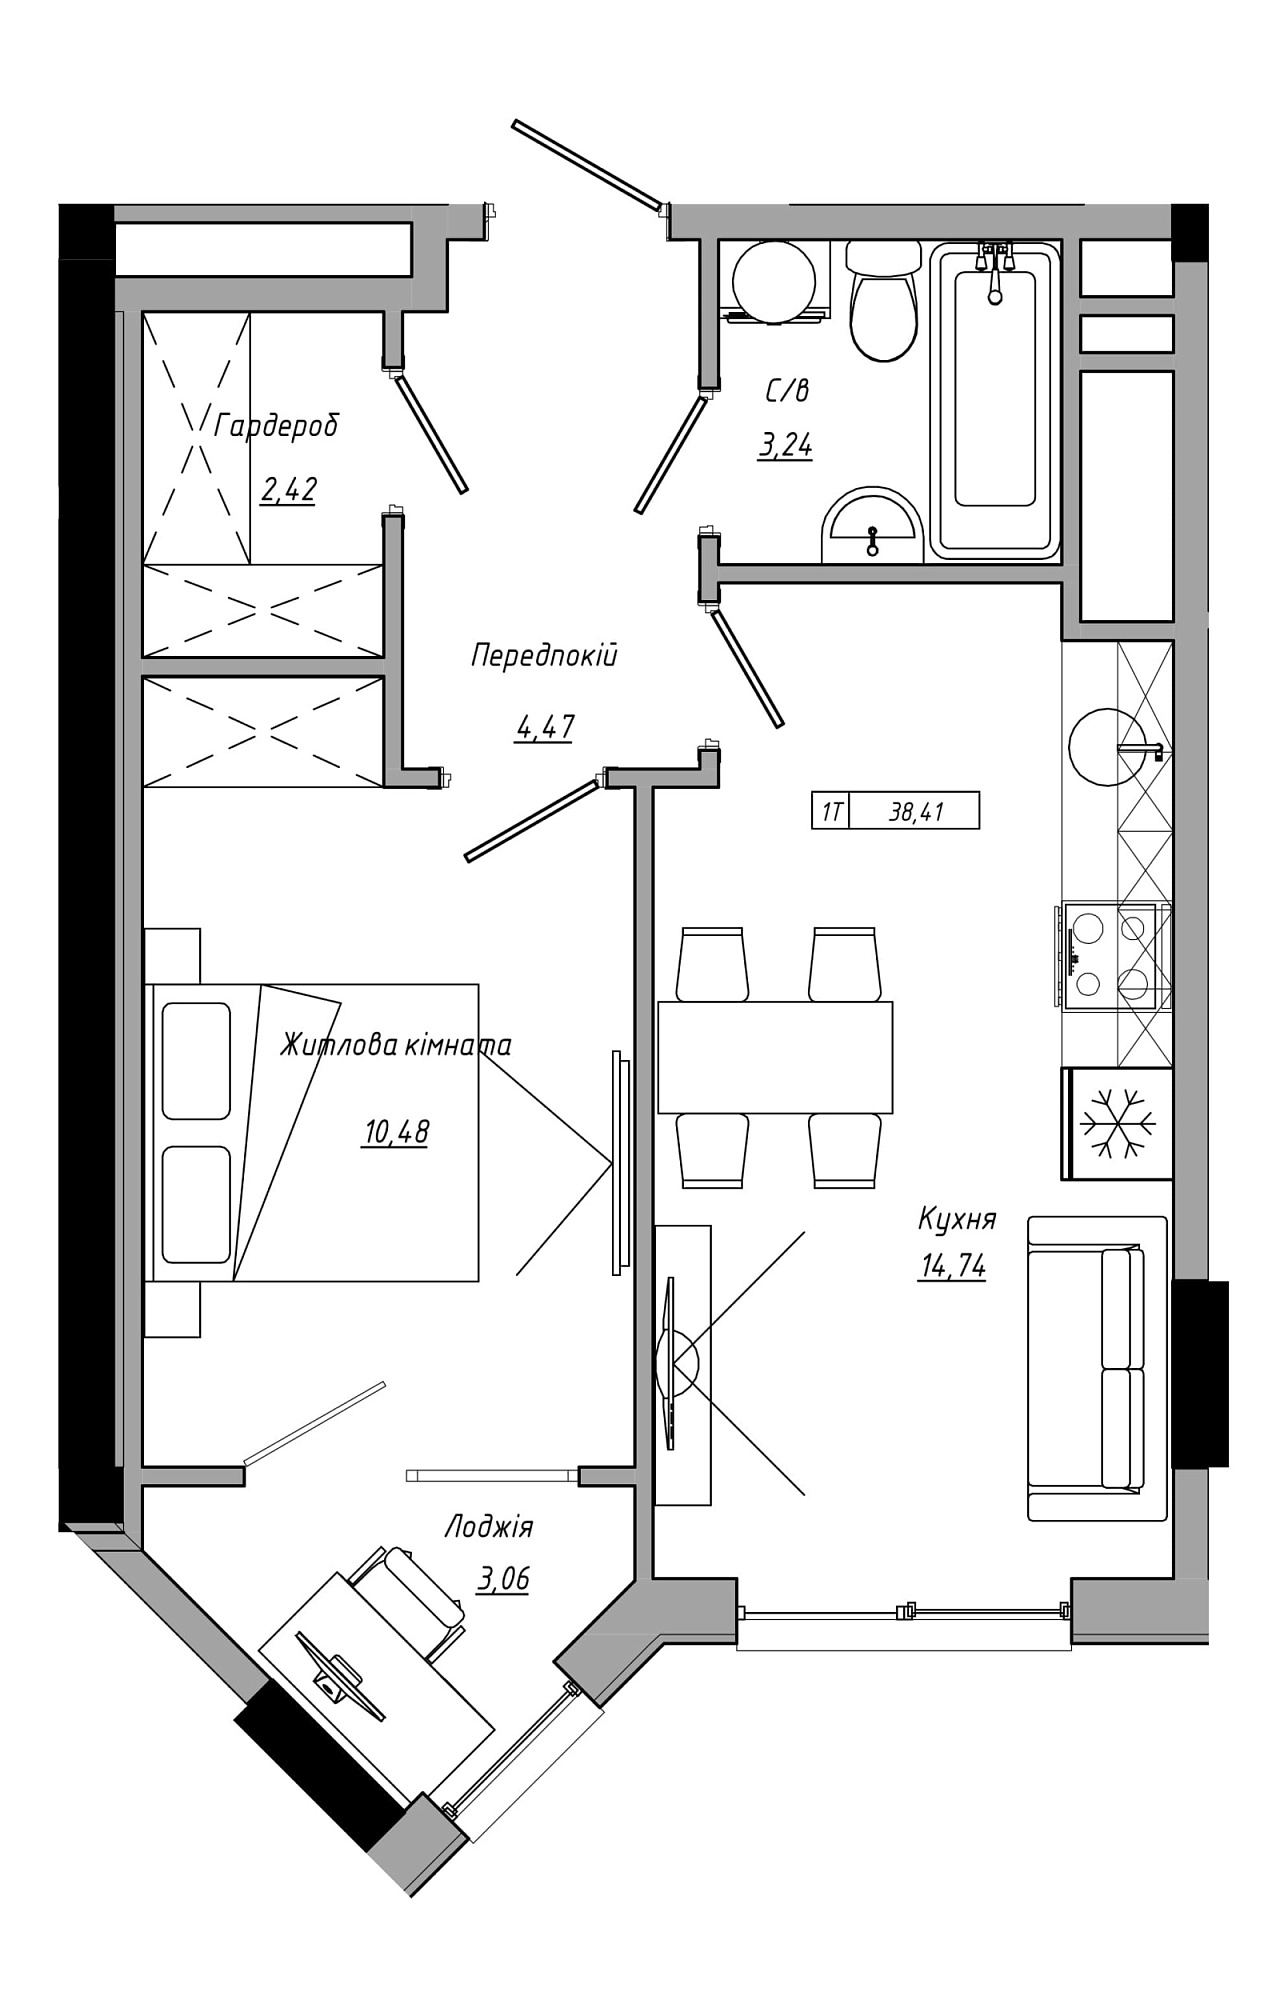 Планування 1-к квартира площею 38.41м2, AB-21-14/00122.